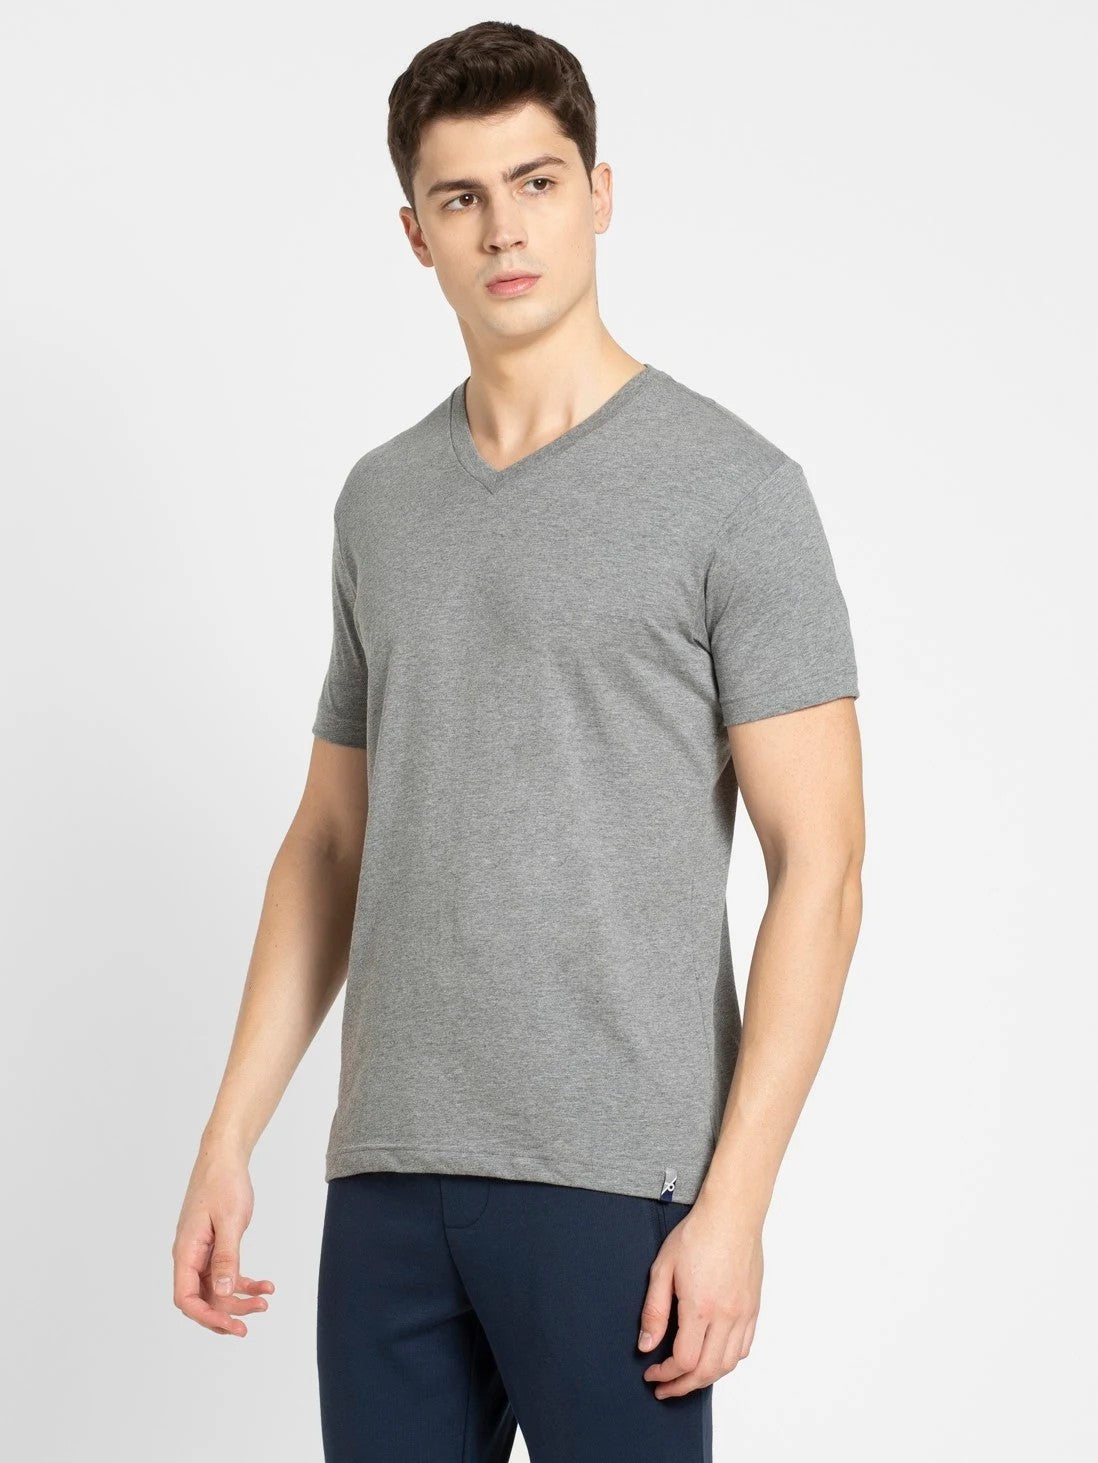 Men's Grey Melange V-Neck T-shirt